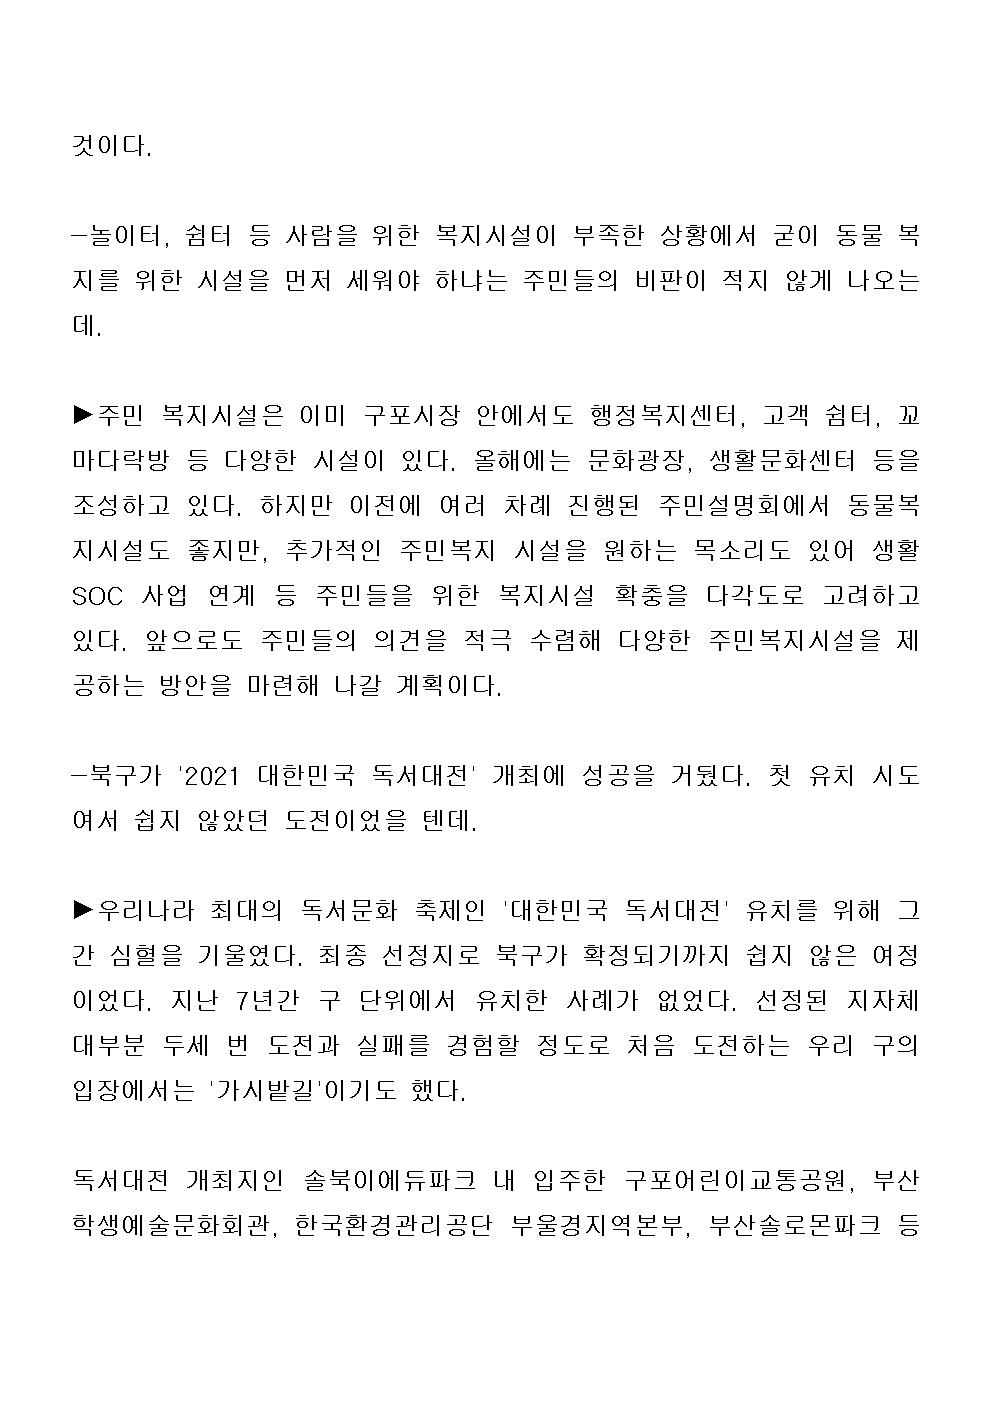 (20.10.08) 부산 북구청장, 30만 구민과 함께 새로운 미래 그려가겠다_구청장 인터뷰 (2)